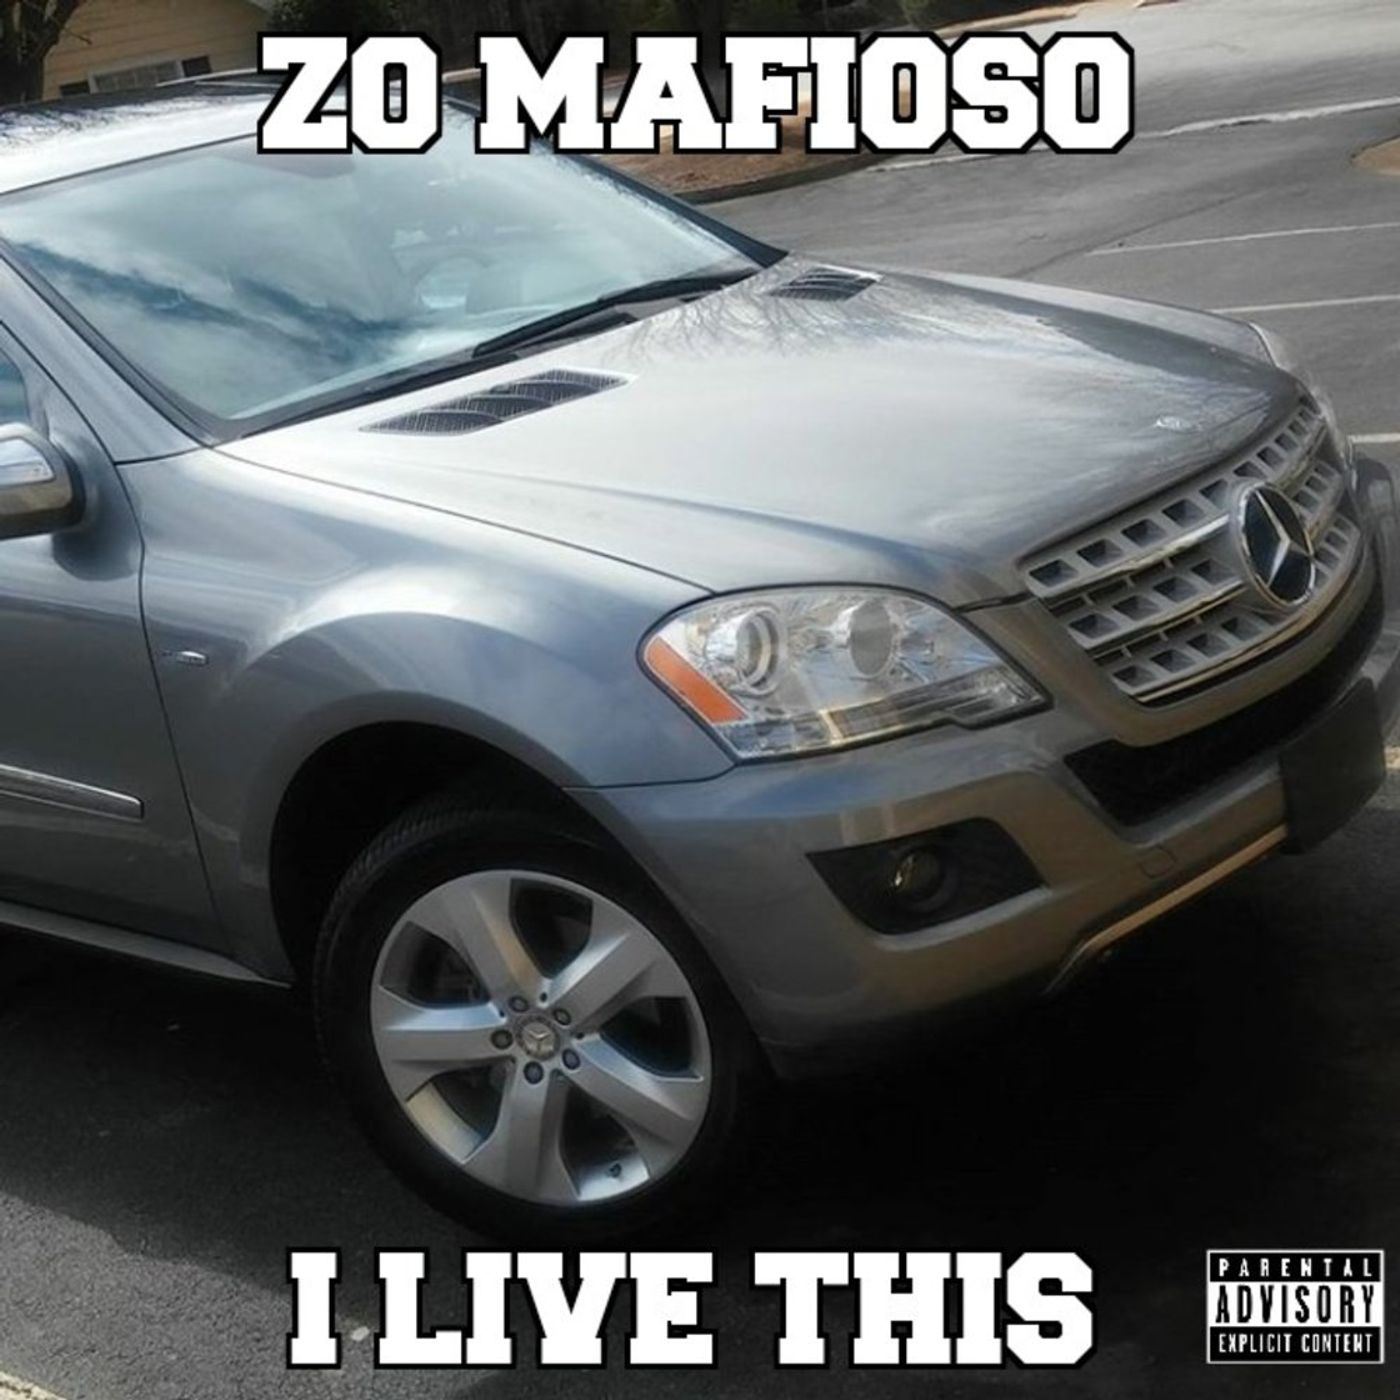 Zo mafioso's show